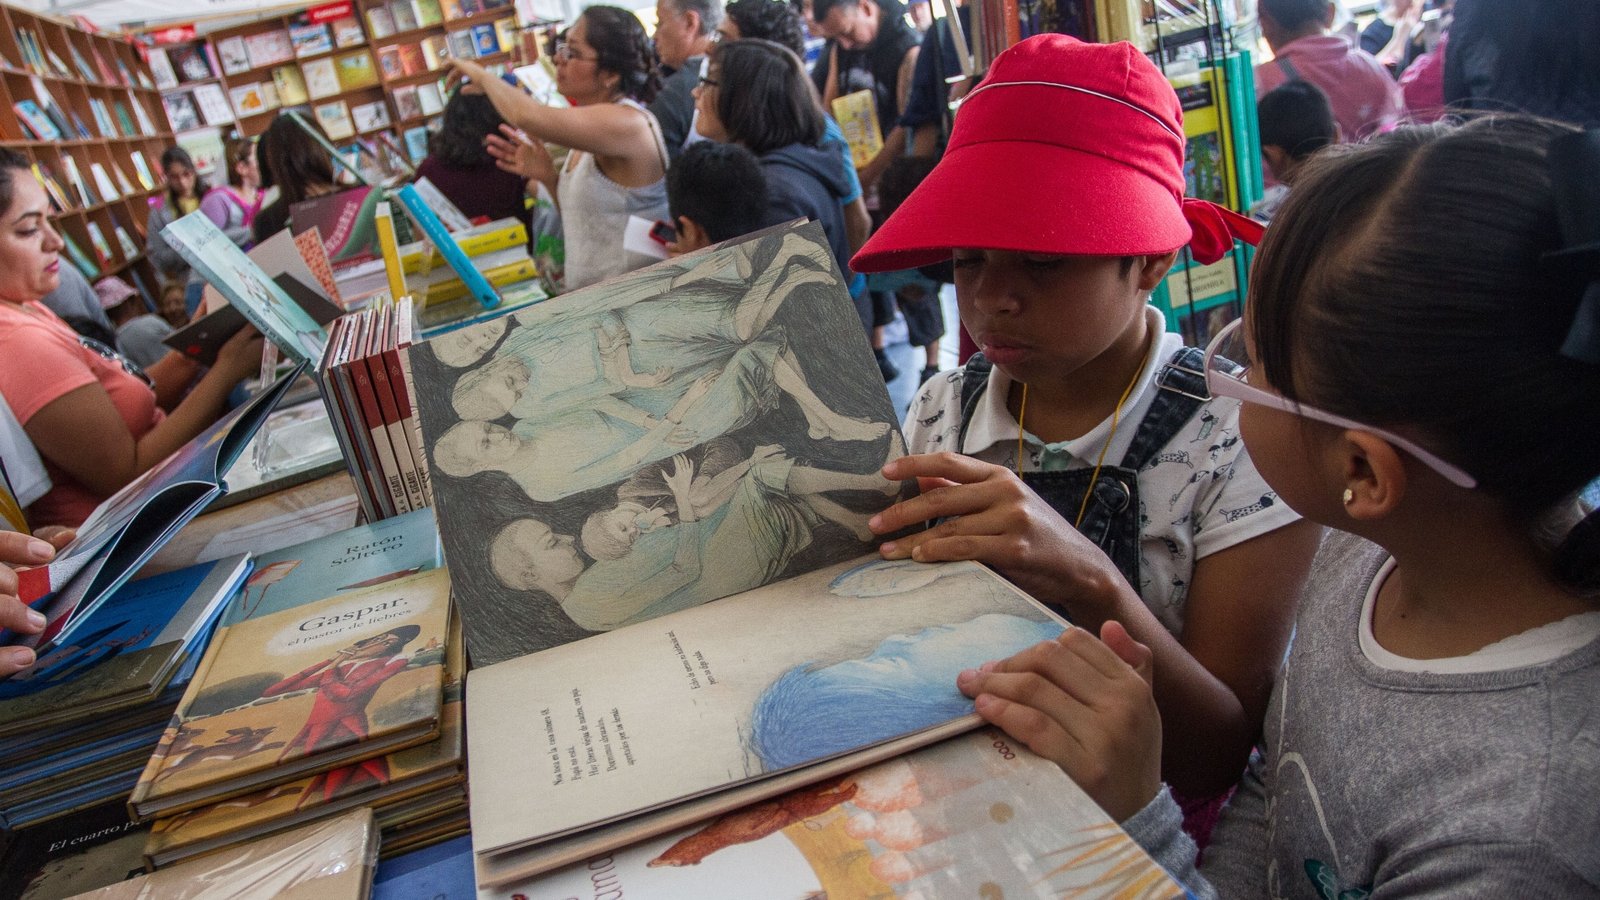 Las incautaciones al narco terminan pagando el programa de libros gratuitos en México